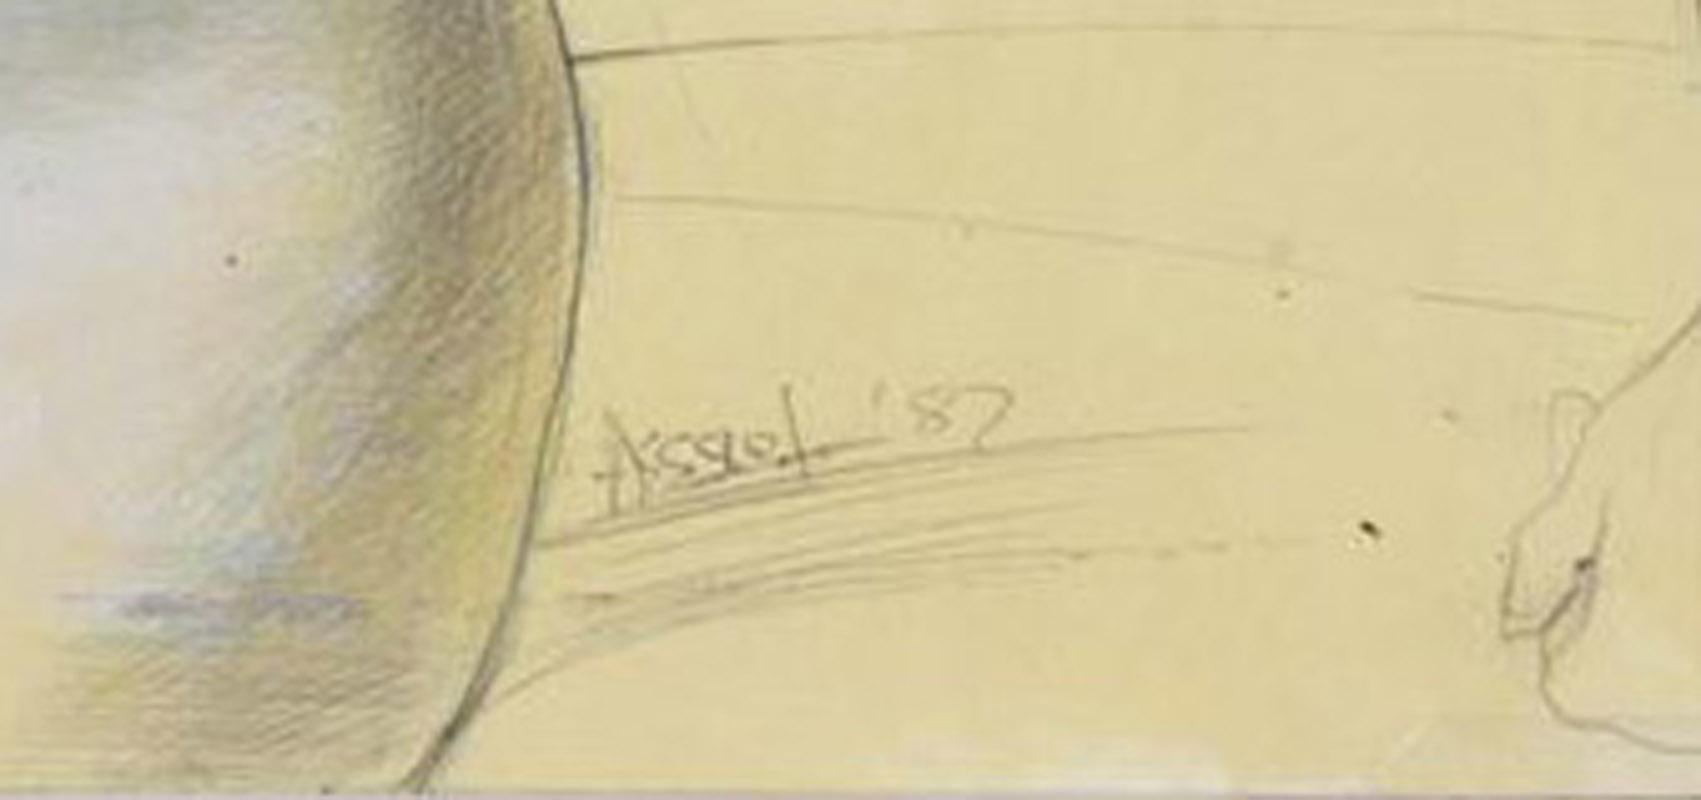 Sans titre (Nu féminin)
Graphite et sgrafitto sur papier jaune, 1987
Signé en bas à droite
Note : Steven Assael est représenté par la Forum Gallery à New York.  En 1977, il a remporté le prix Charles Romans à la National Academy of Design, à New